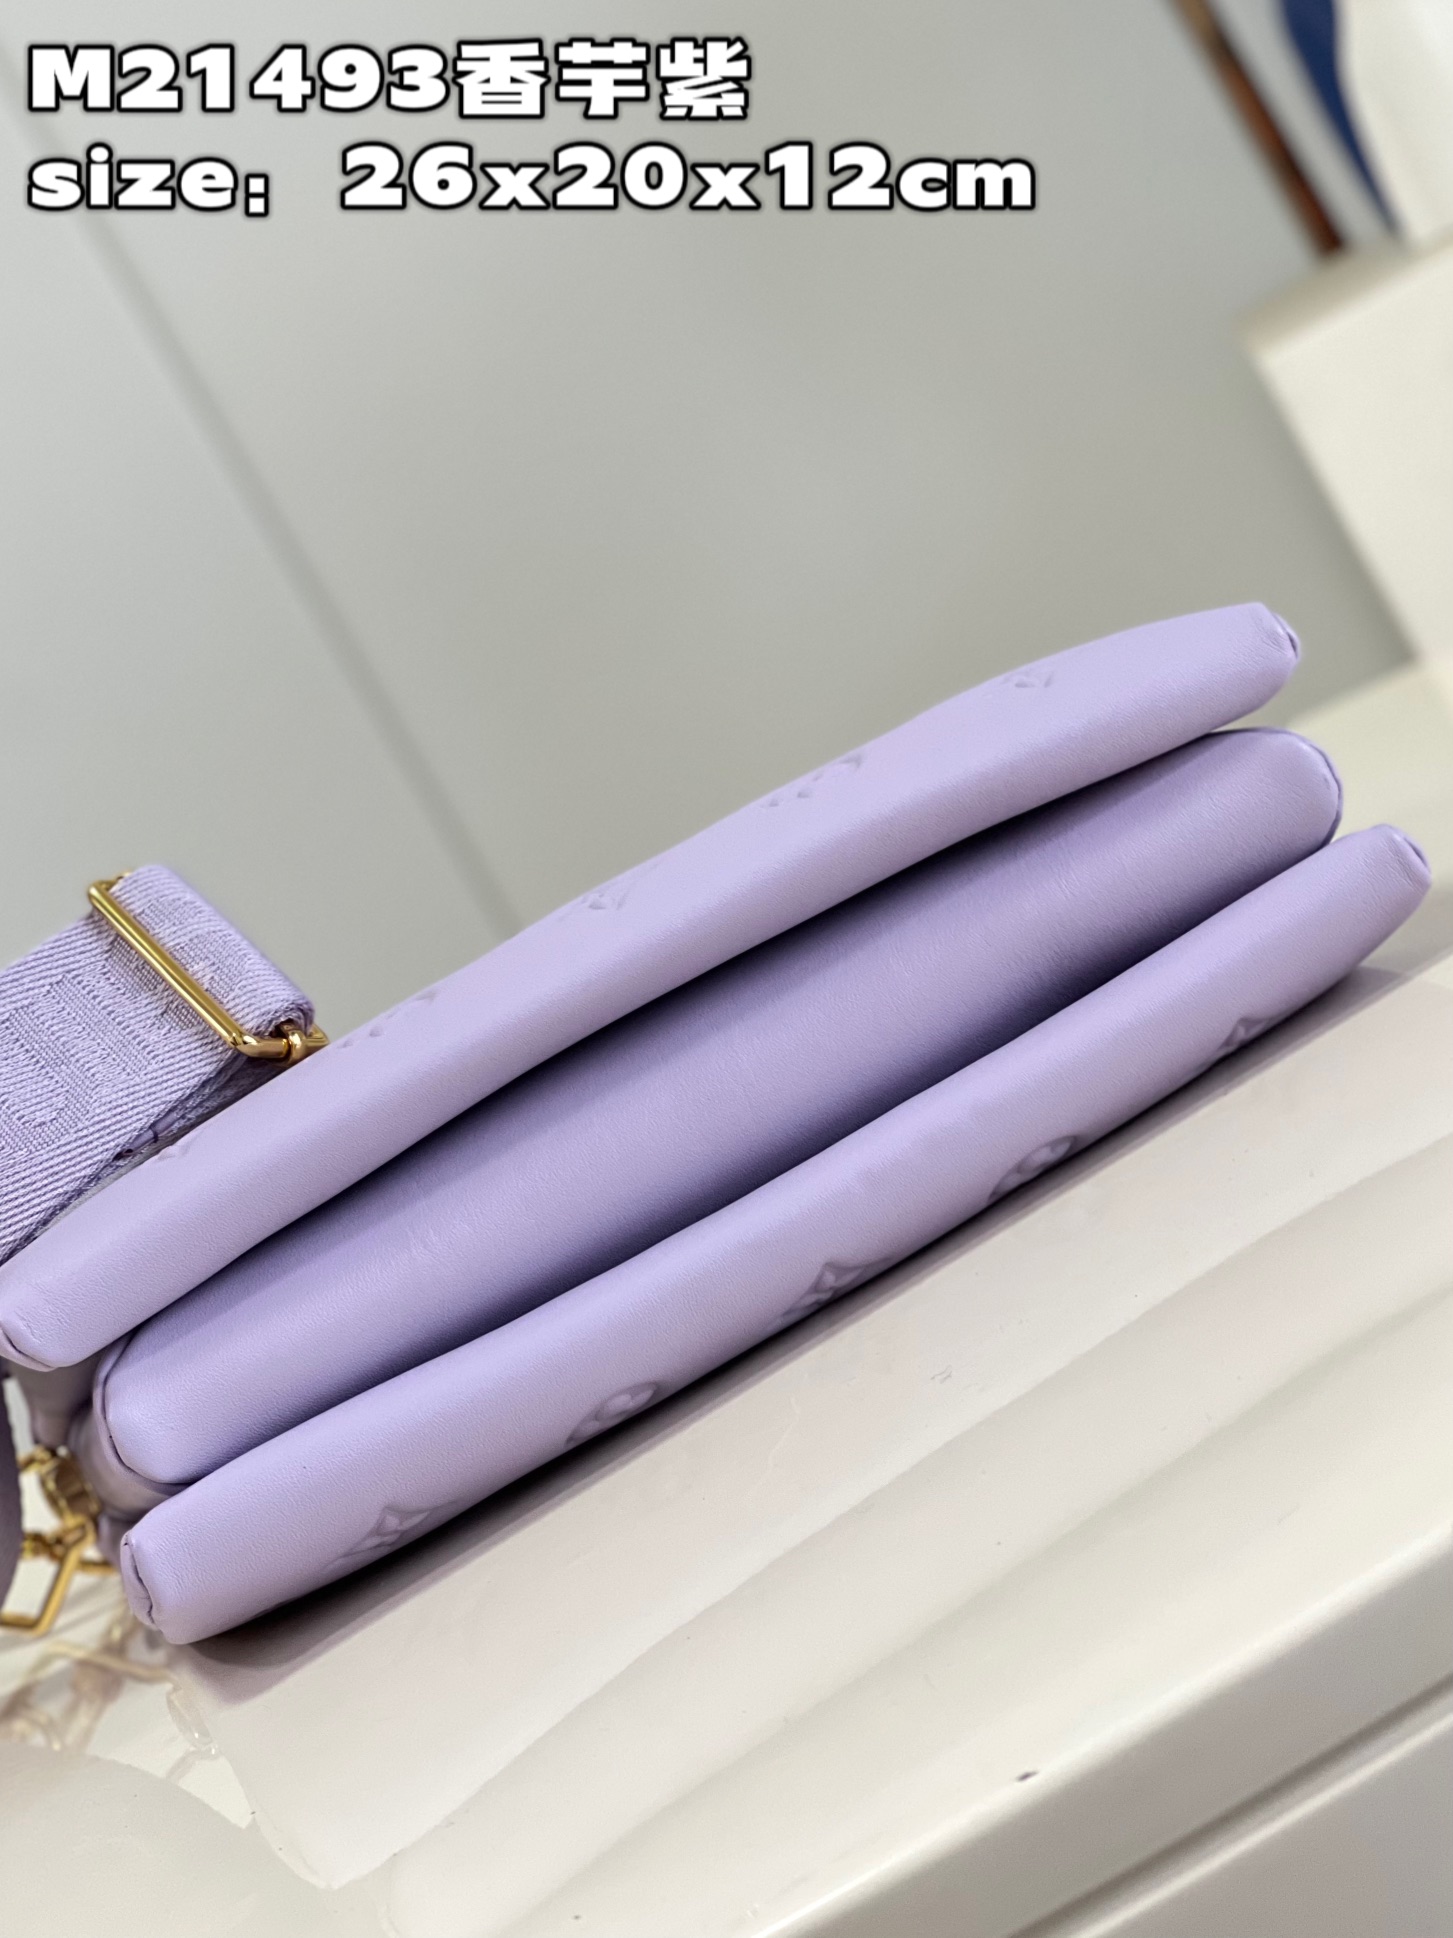 顶级原单M21493香芋紫由蓬松的Monogram压纹版羊皮革制成的Coussin小号手袋包内两个隔层之